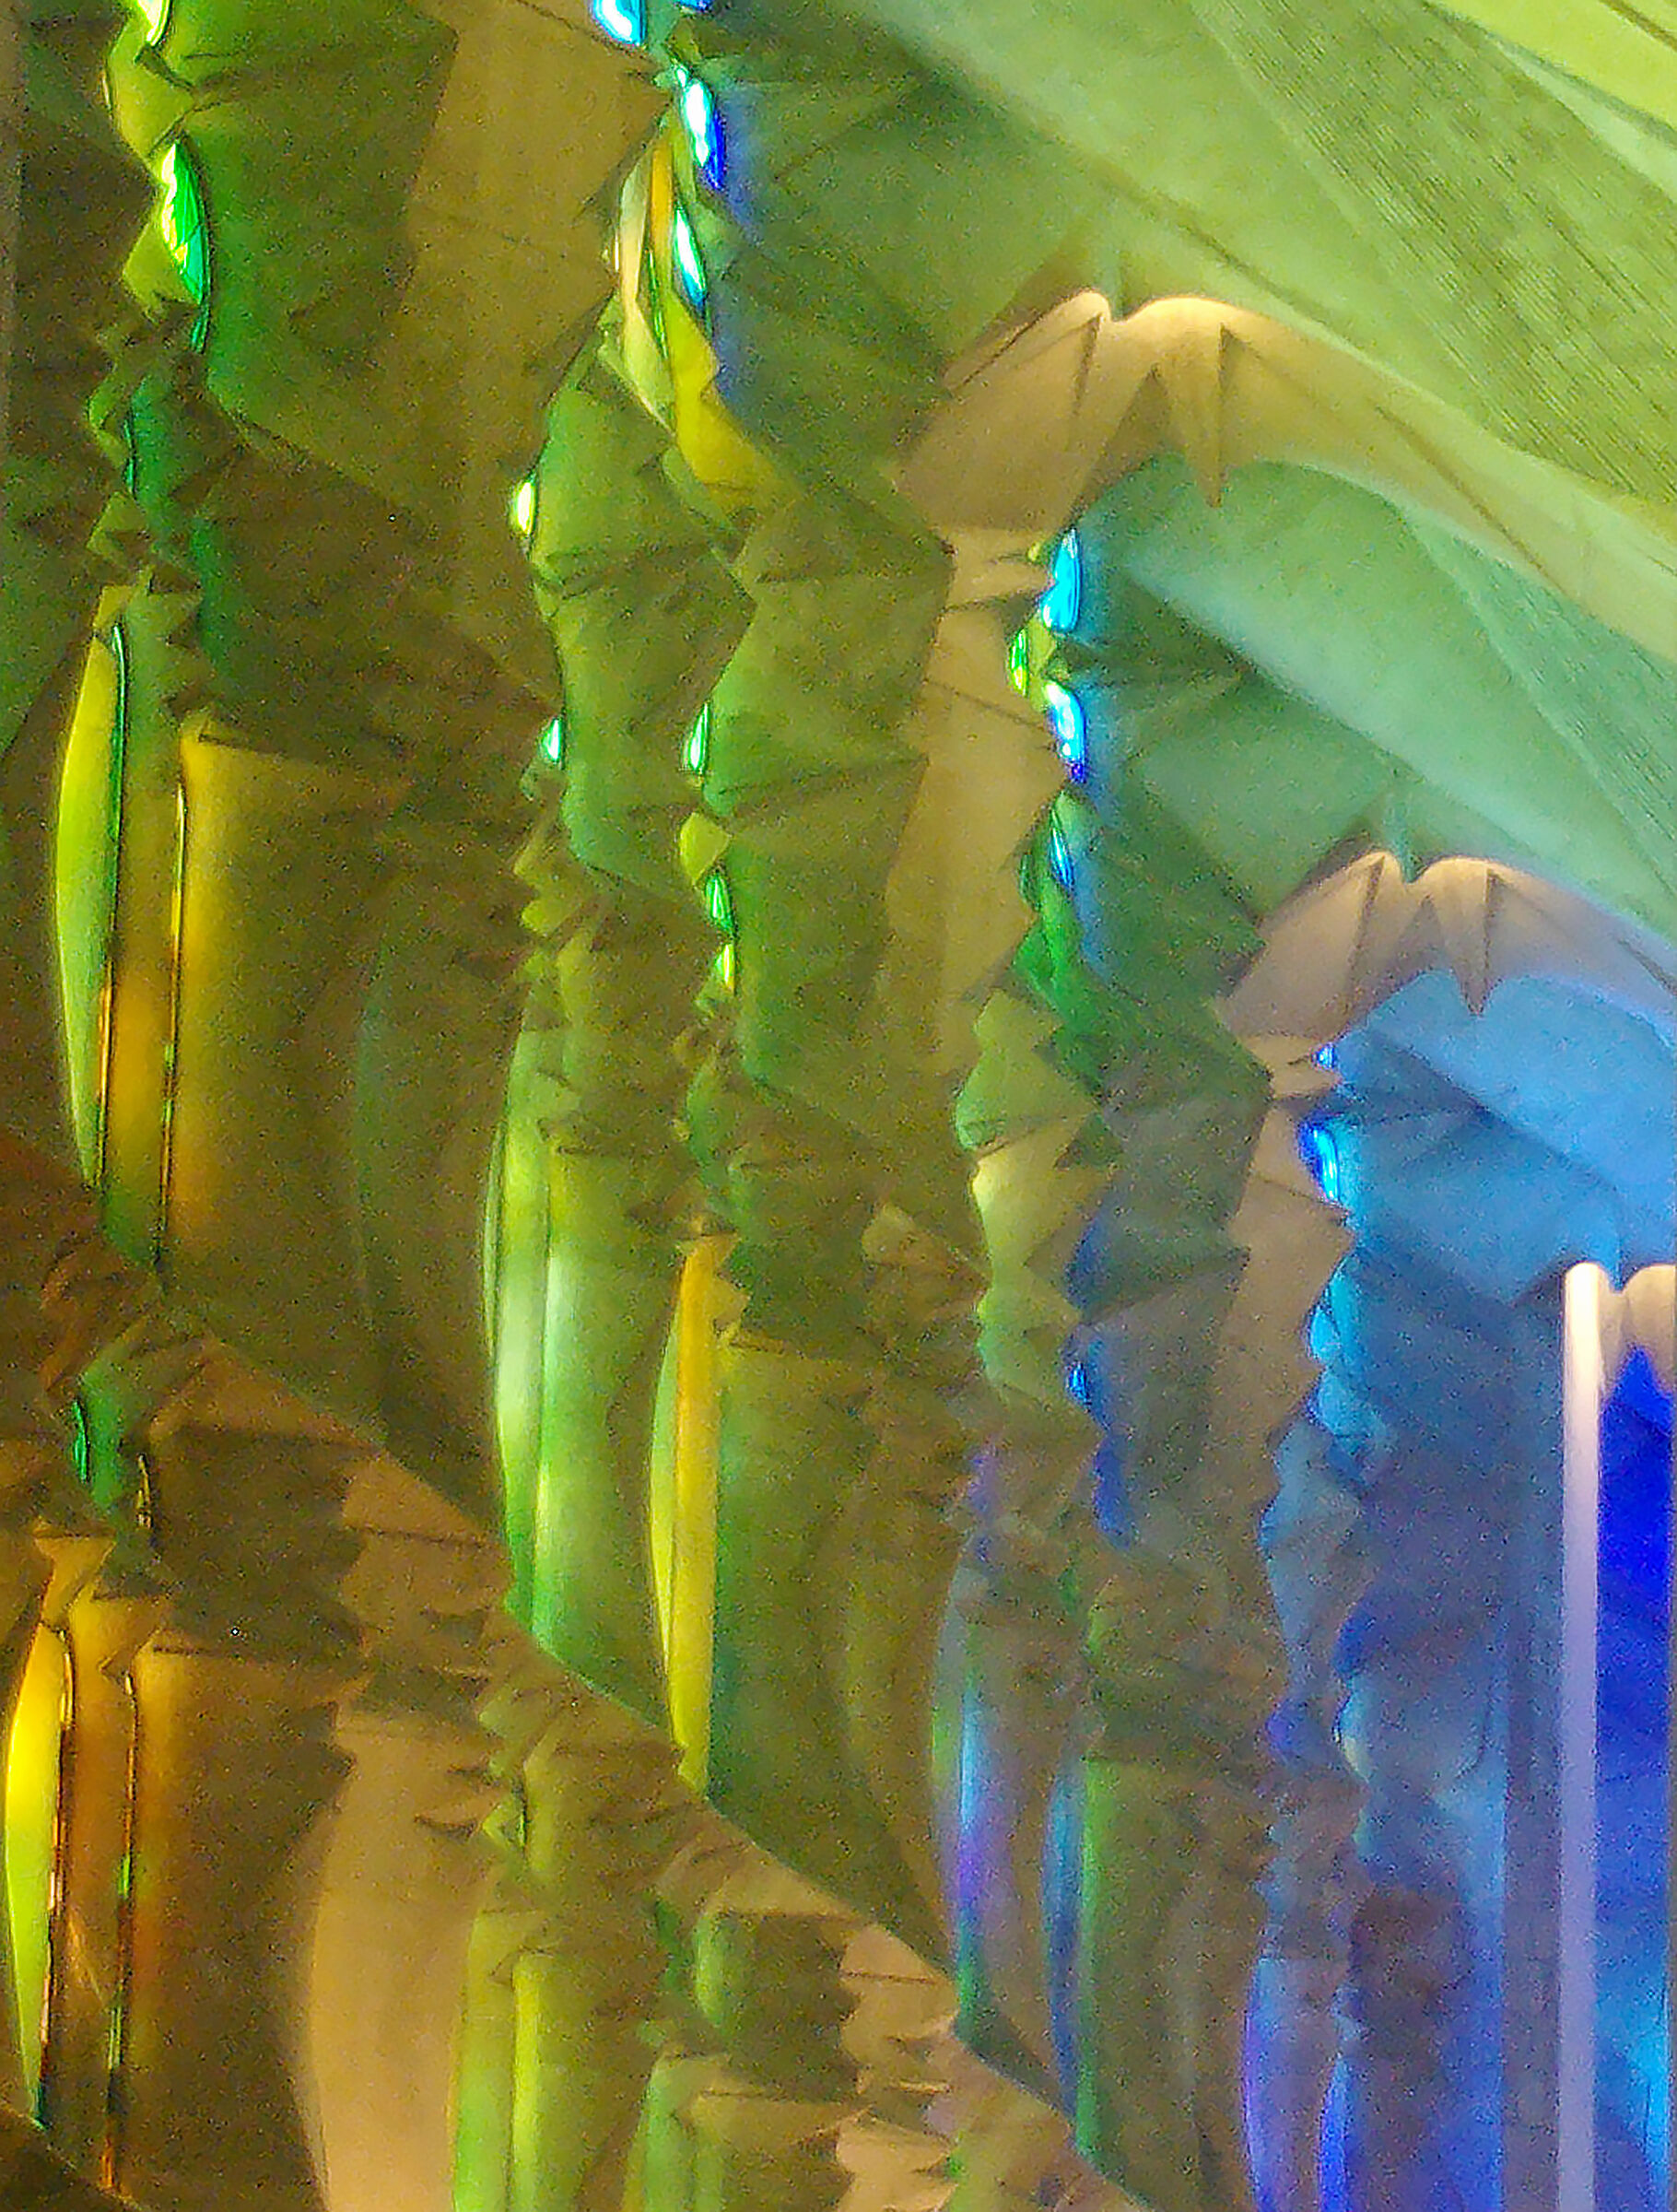 The colors of the Sagrada Familia...